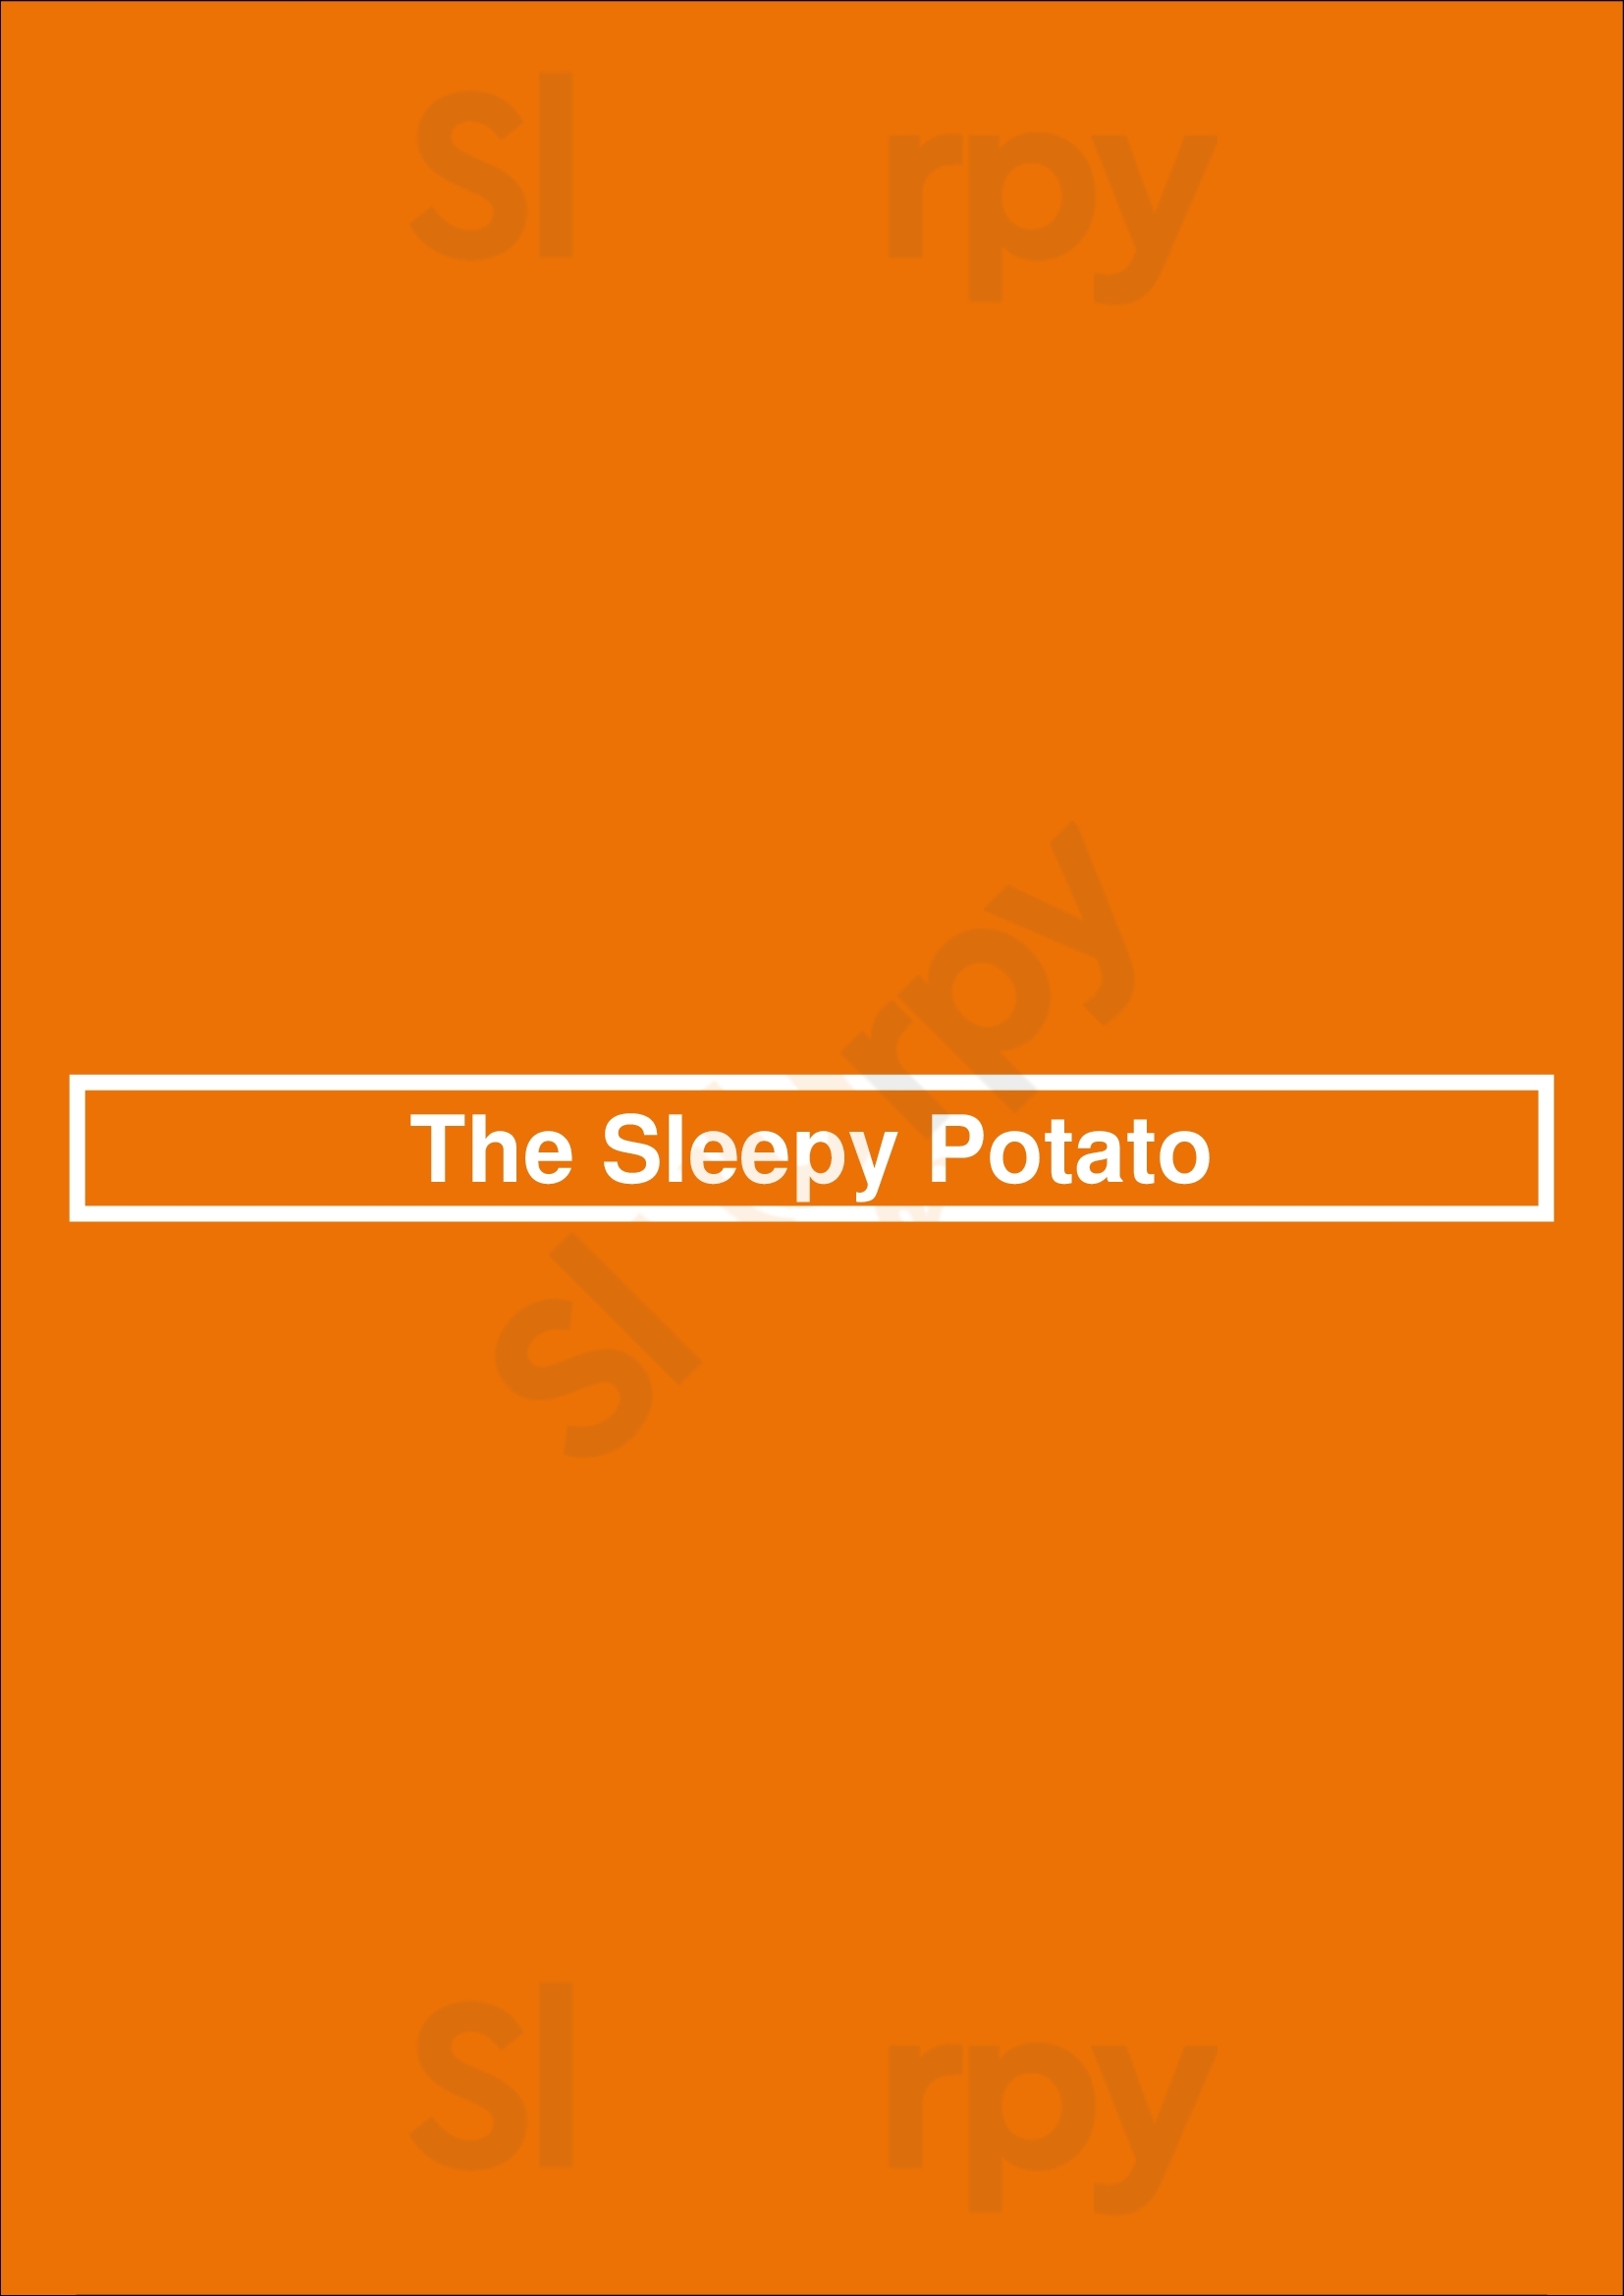 The Sleepy Potato Atlanta Menu - 1